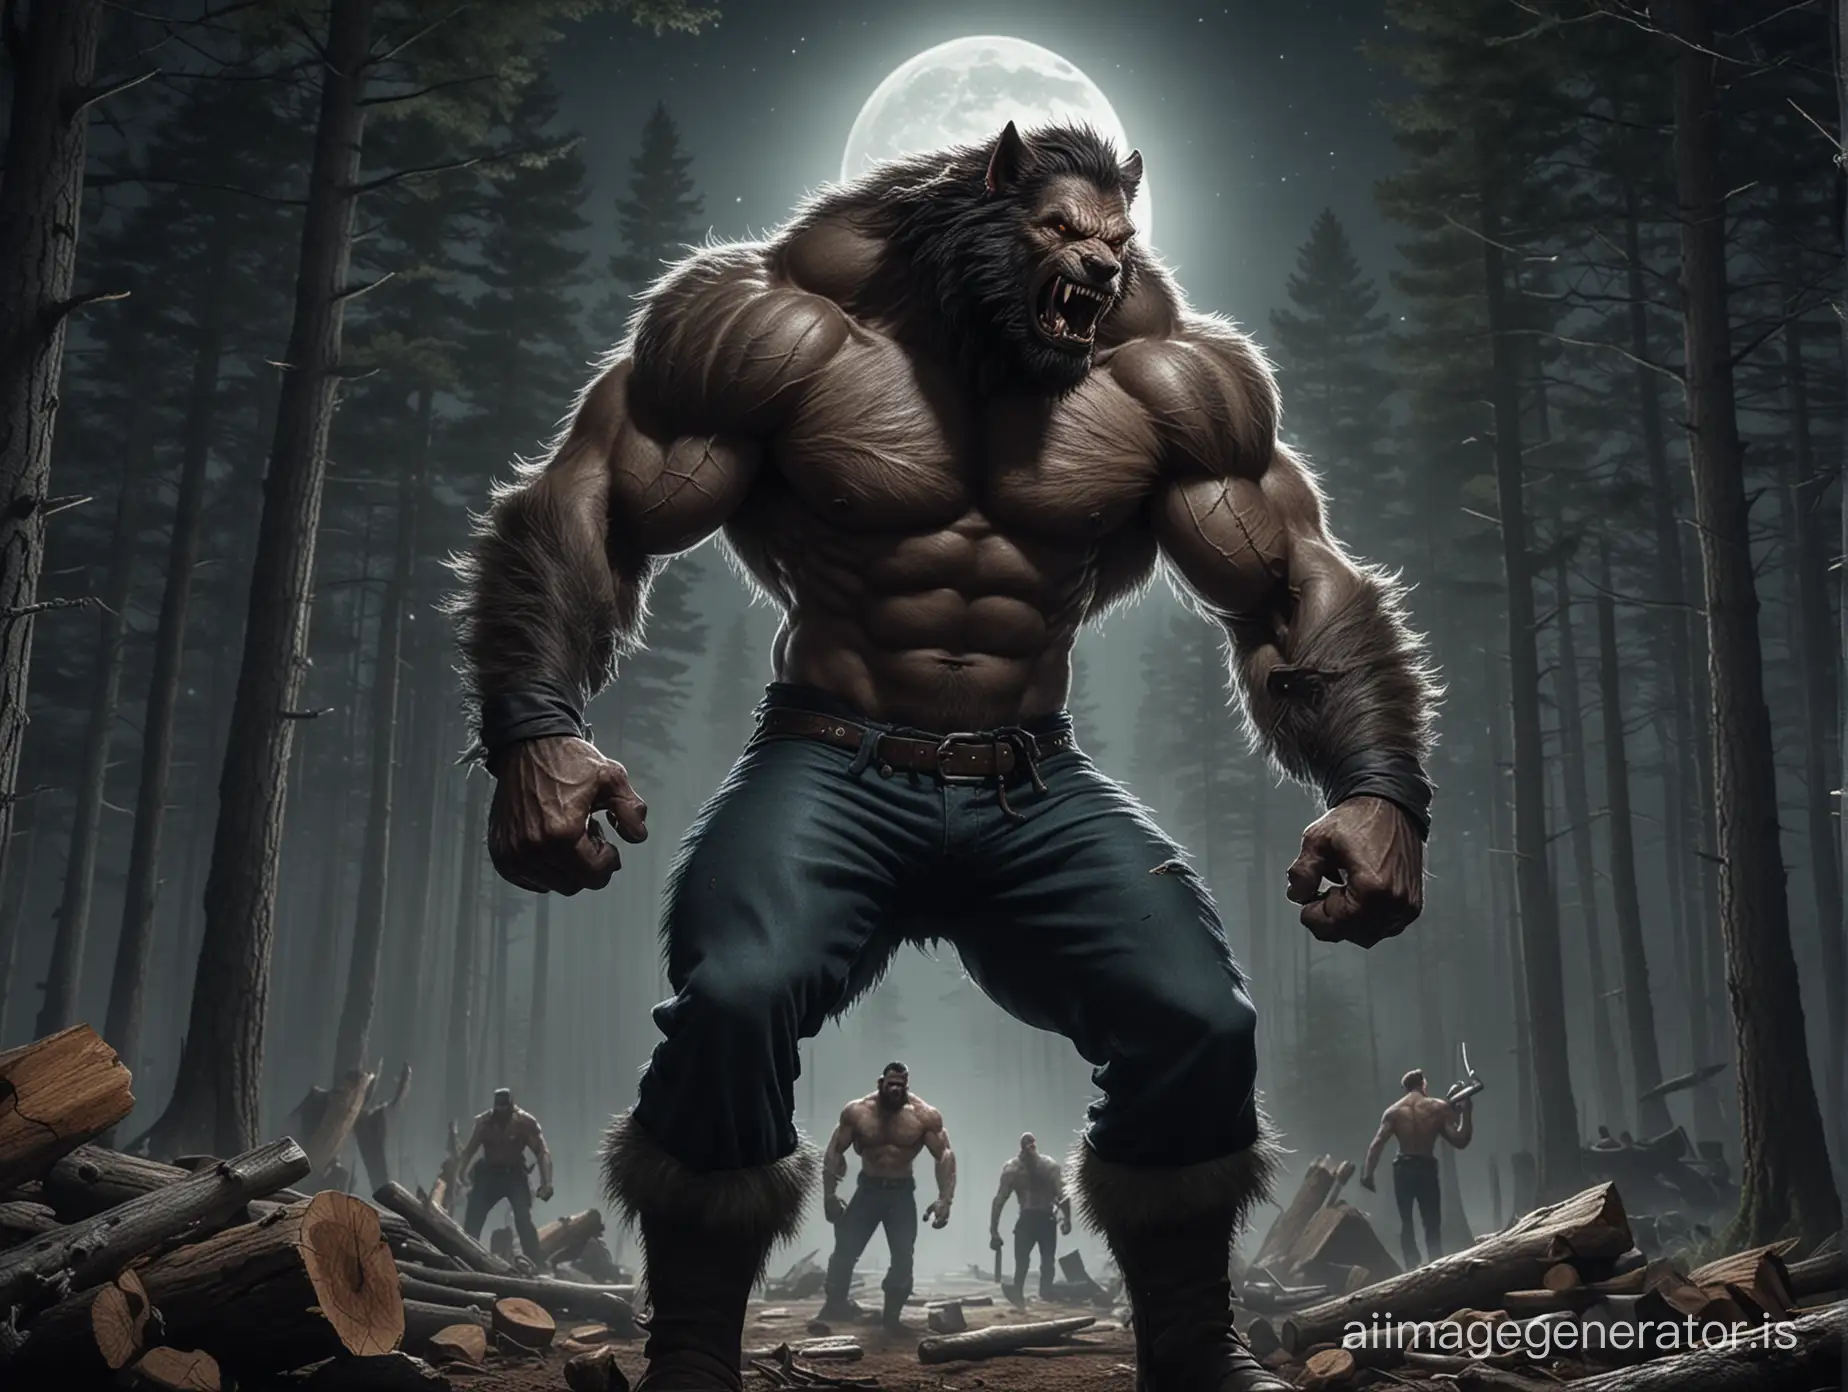 Giant-Muscular-Werewolf-Lumberjacks-Transforming-in-Moonlit-Woods